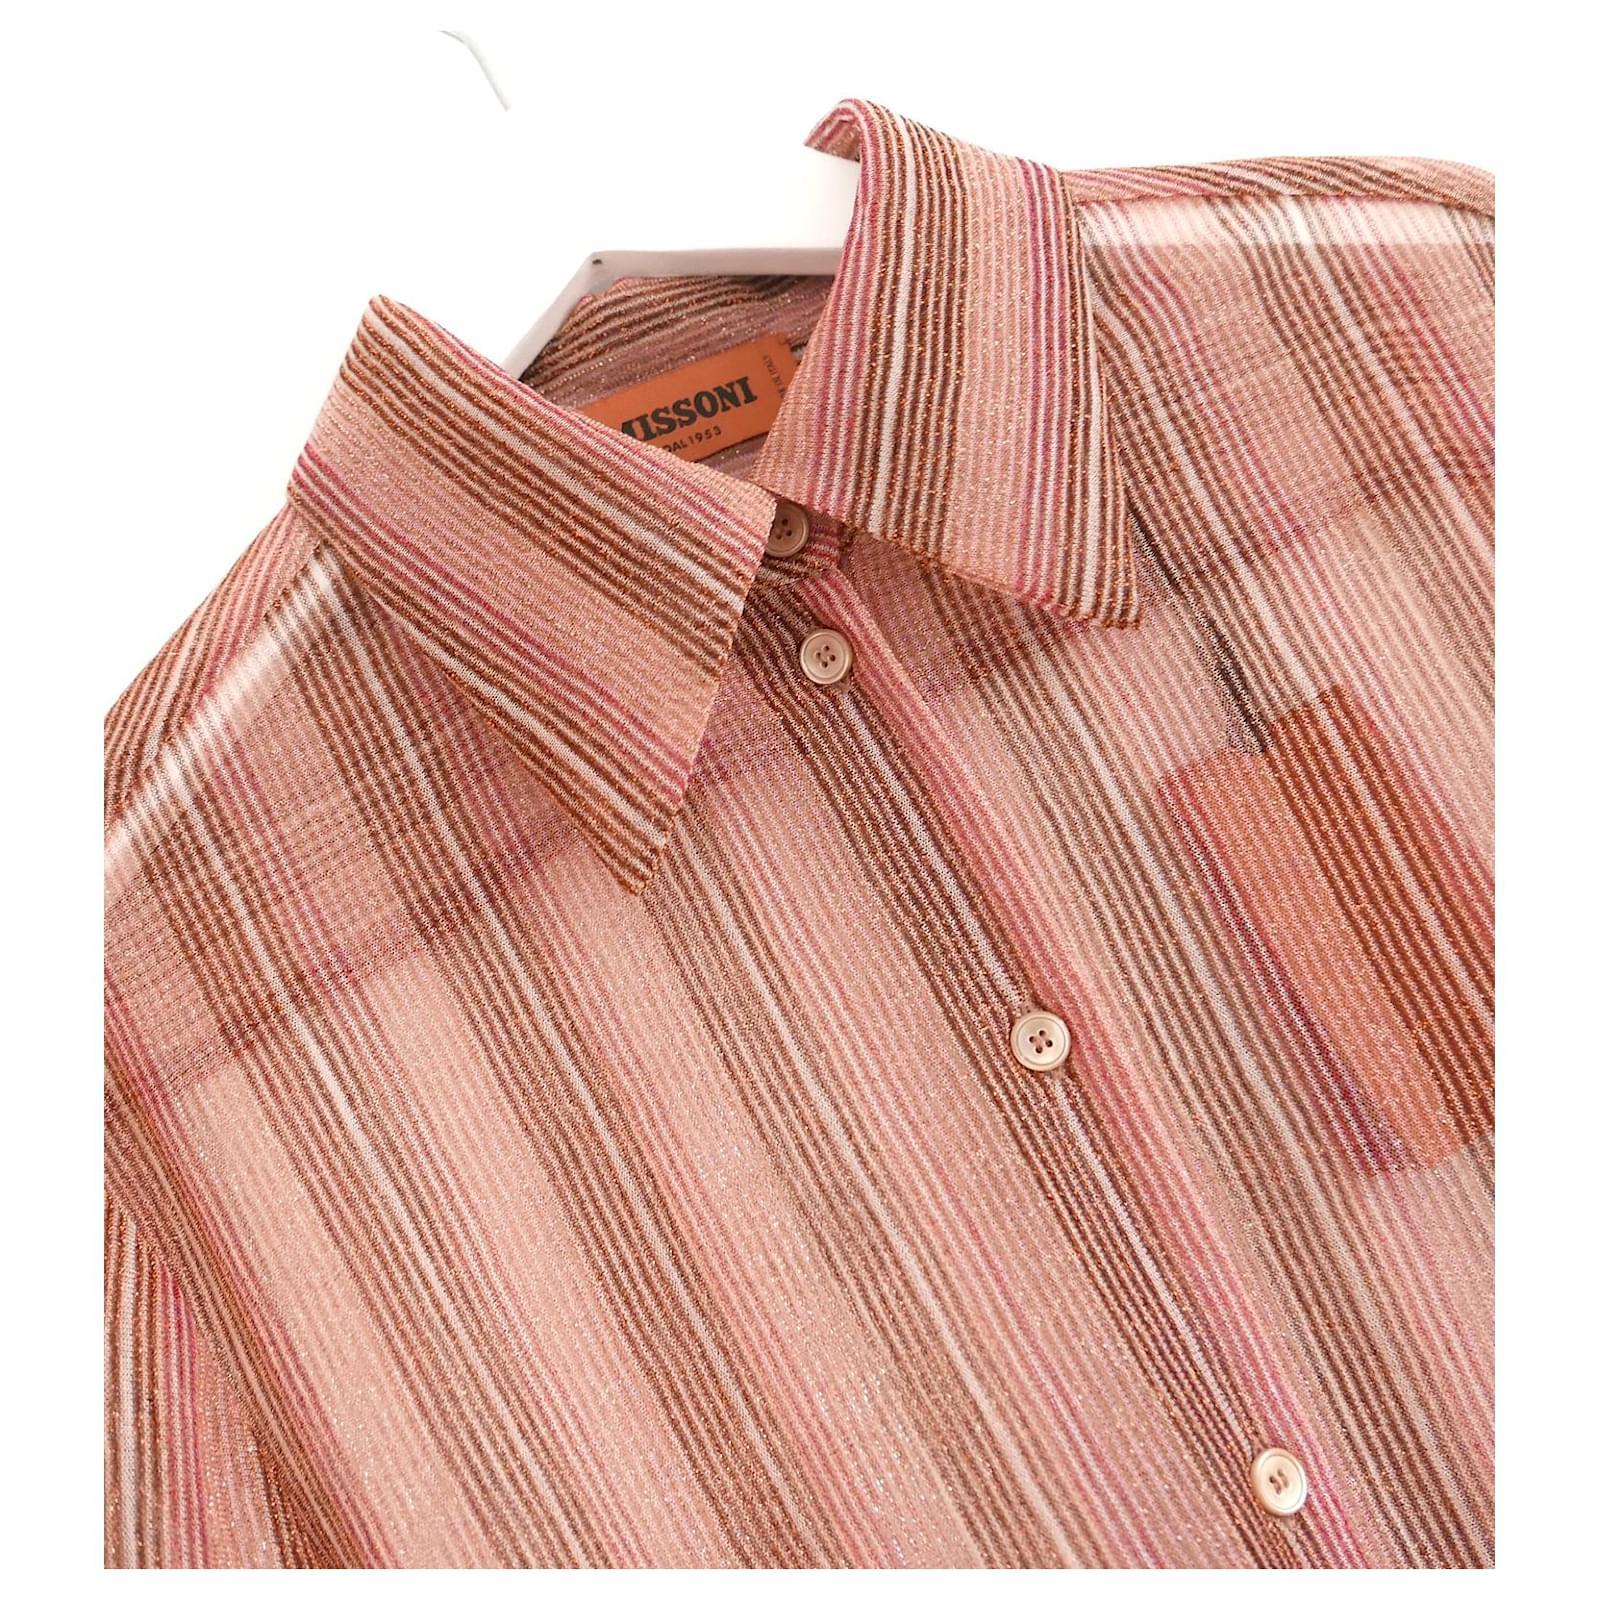 Magnifique blouse rayée en lurex de Missoni - achetée pour £650 et neuve avec ses étiquettes. Réalisé en mélange polyester/polyamide rayé doux et transparent, avec une finition étincelante. Col pointu, poignets découpés et manches bouffantes. Taille